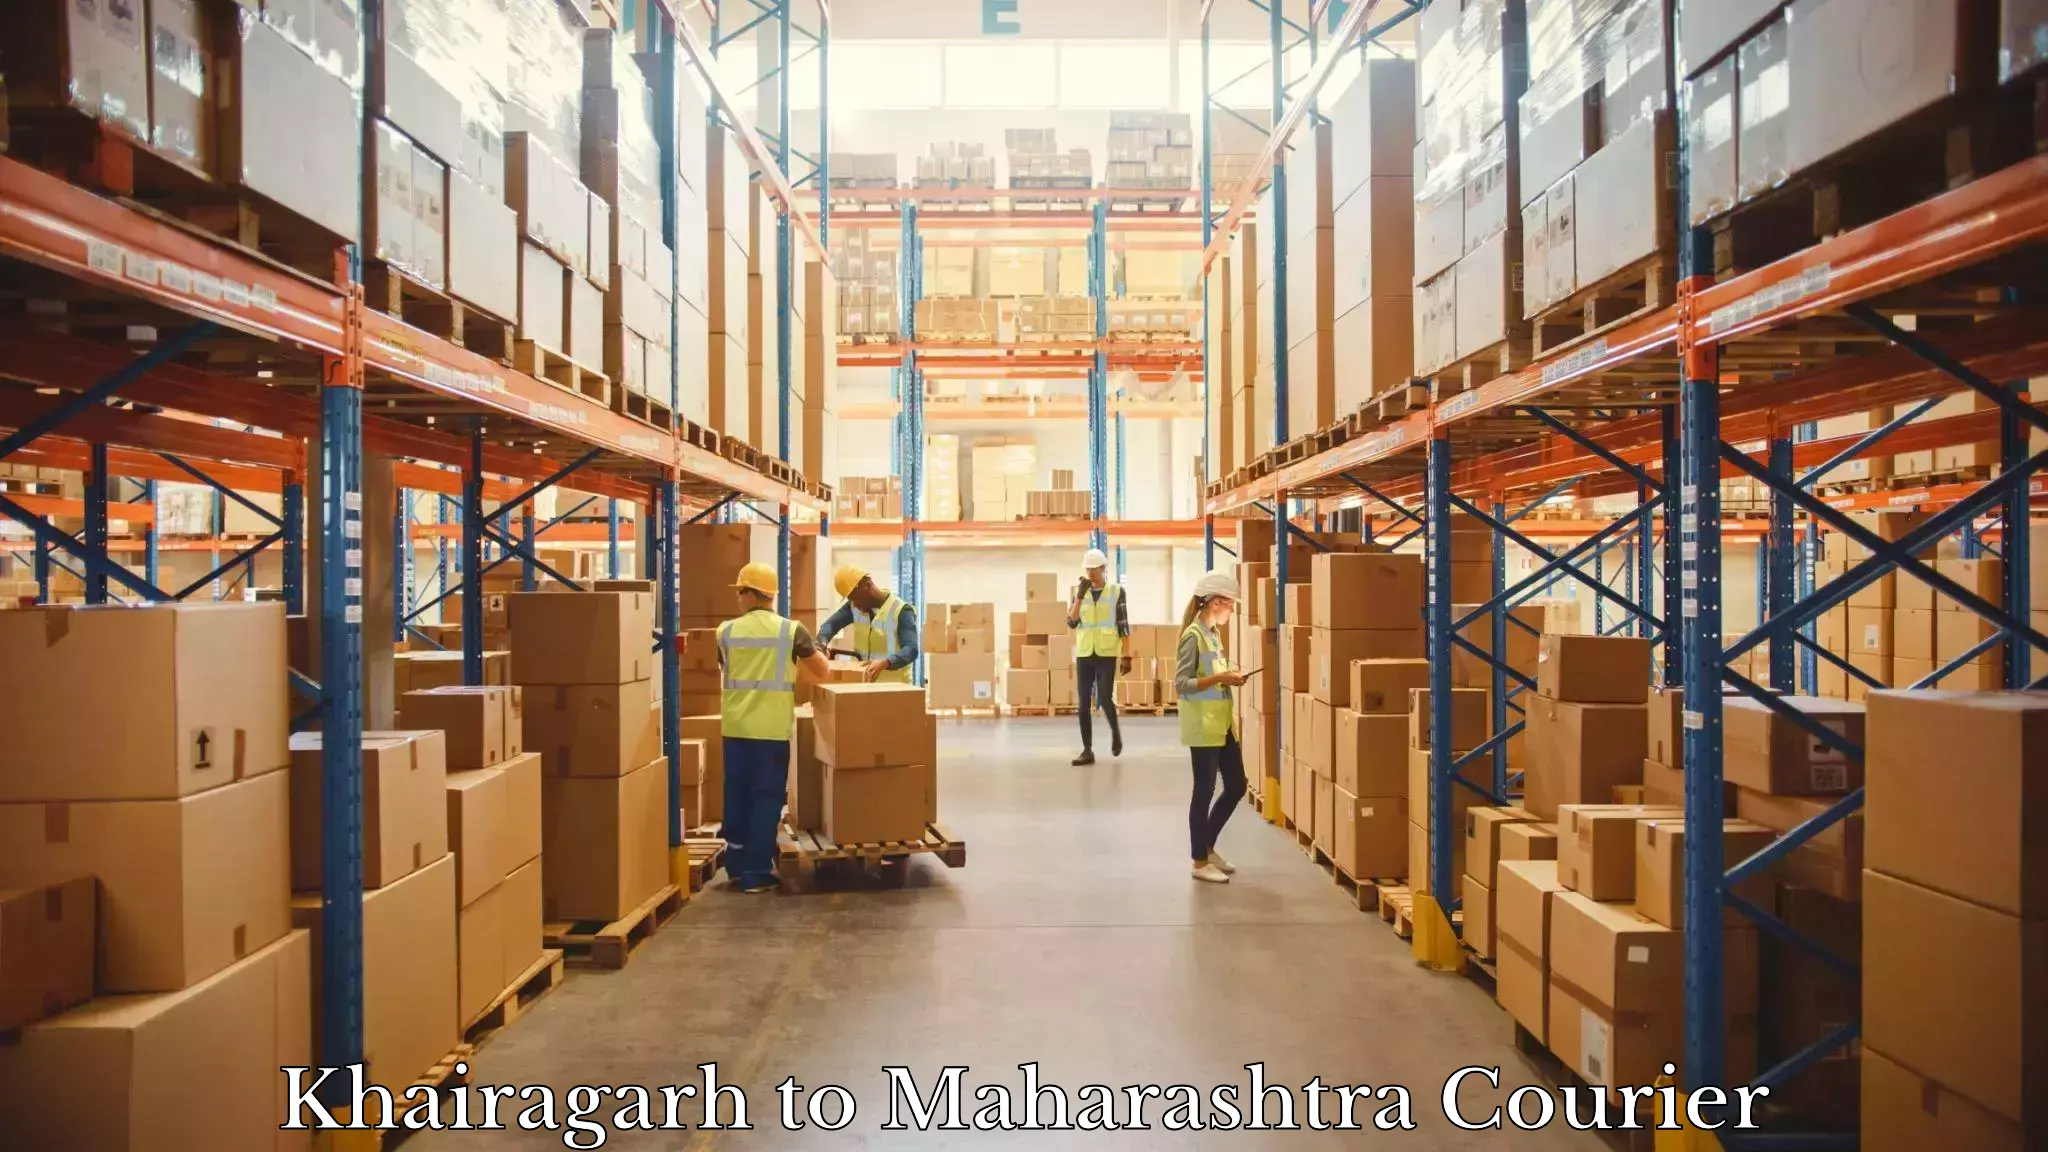 Reliable courier services Khairagarh to Ahmednagar